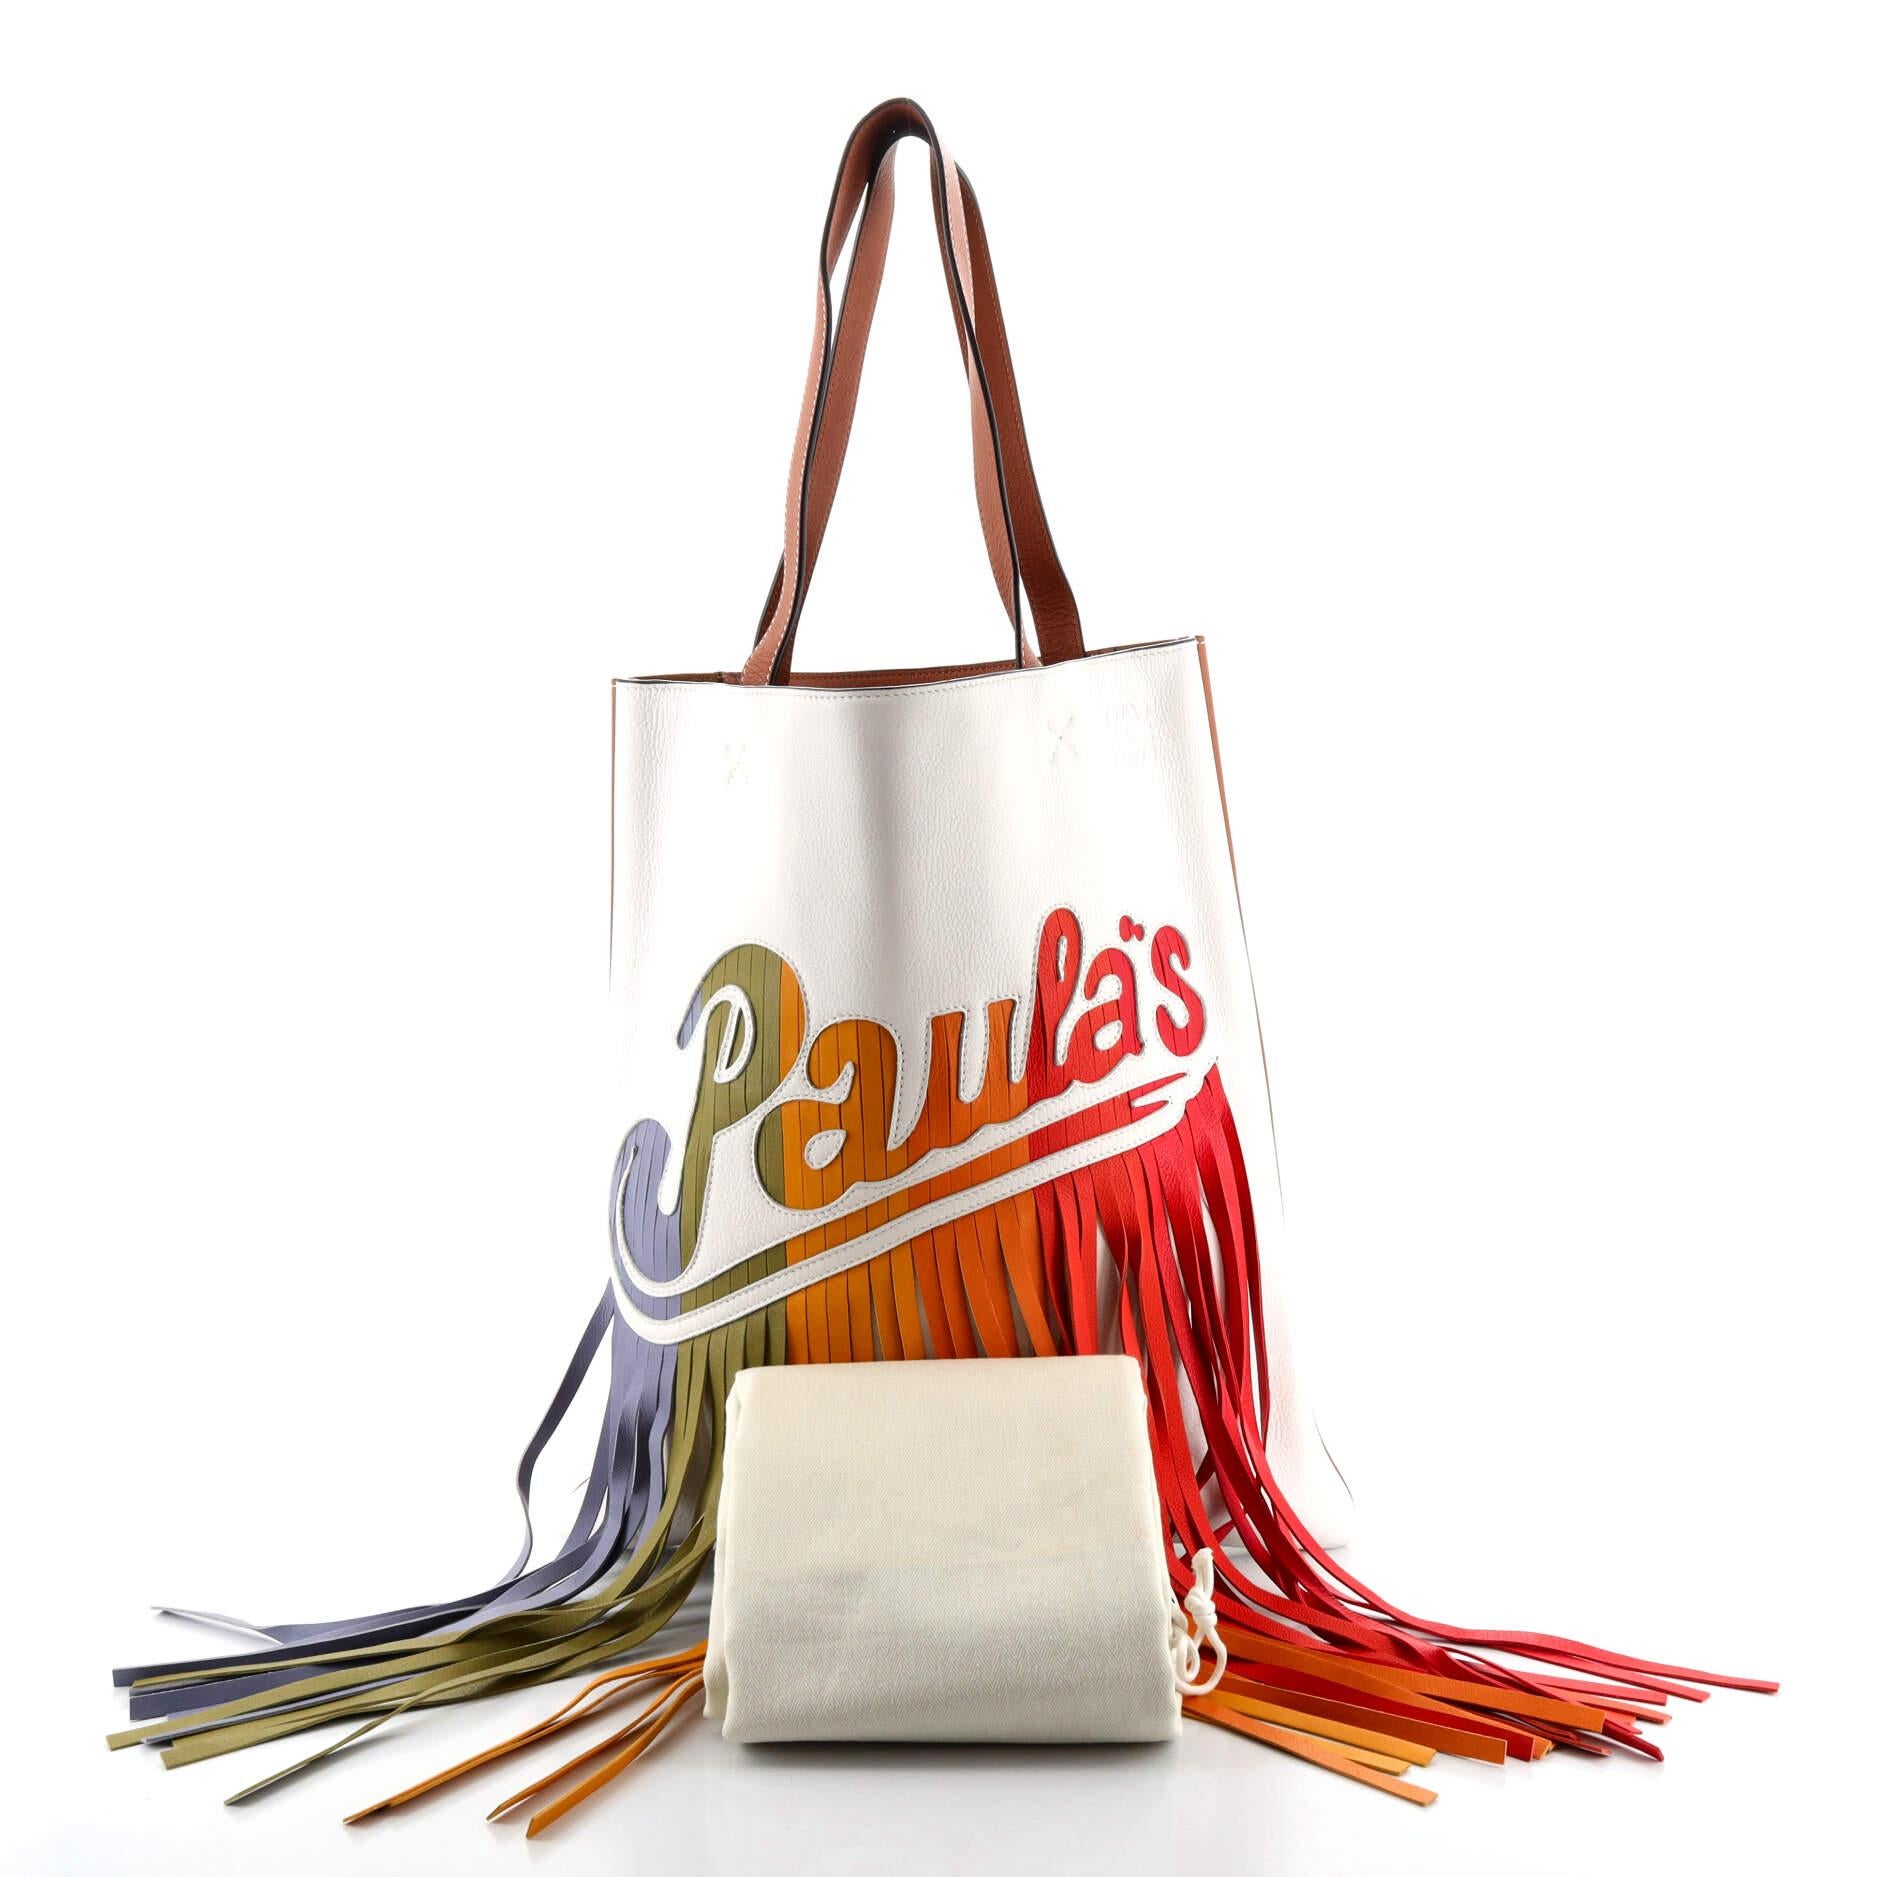 LOEWE x Paula's Ibiza Small Fringes Bucket Bag